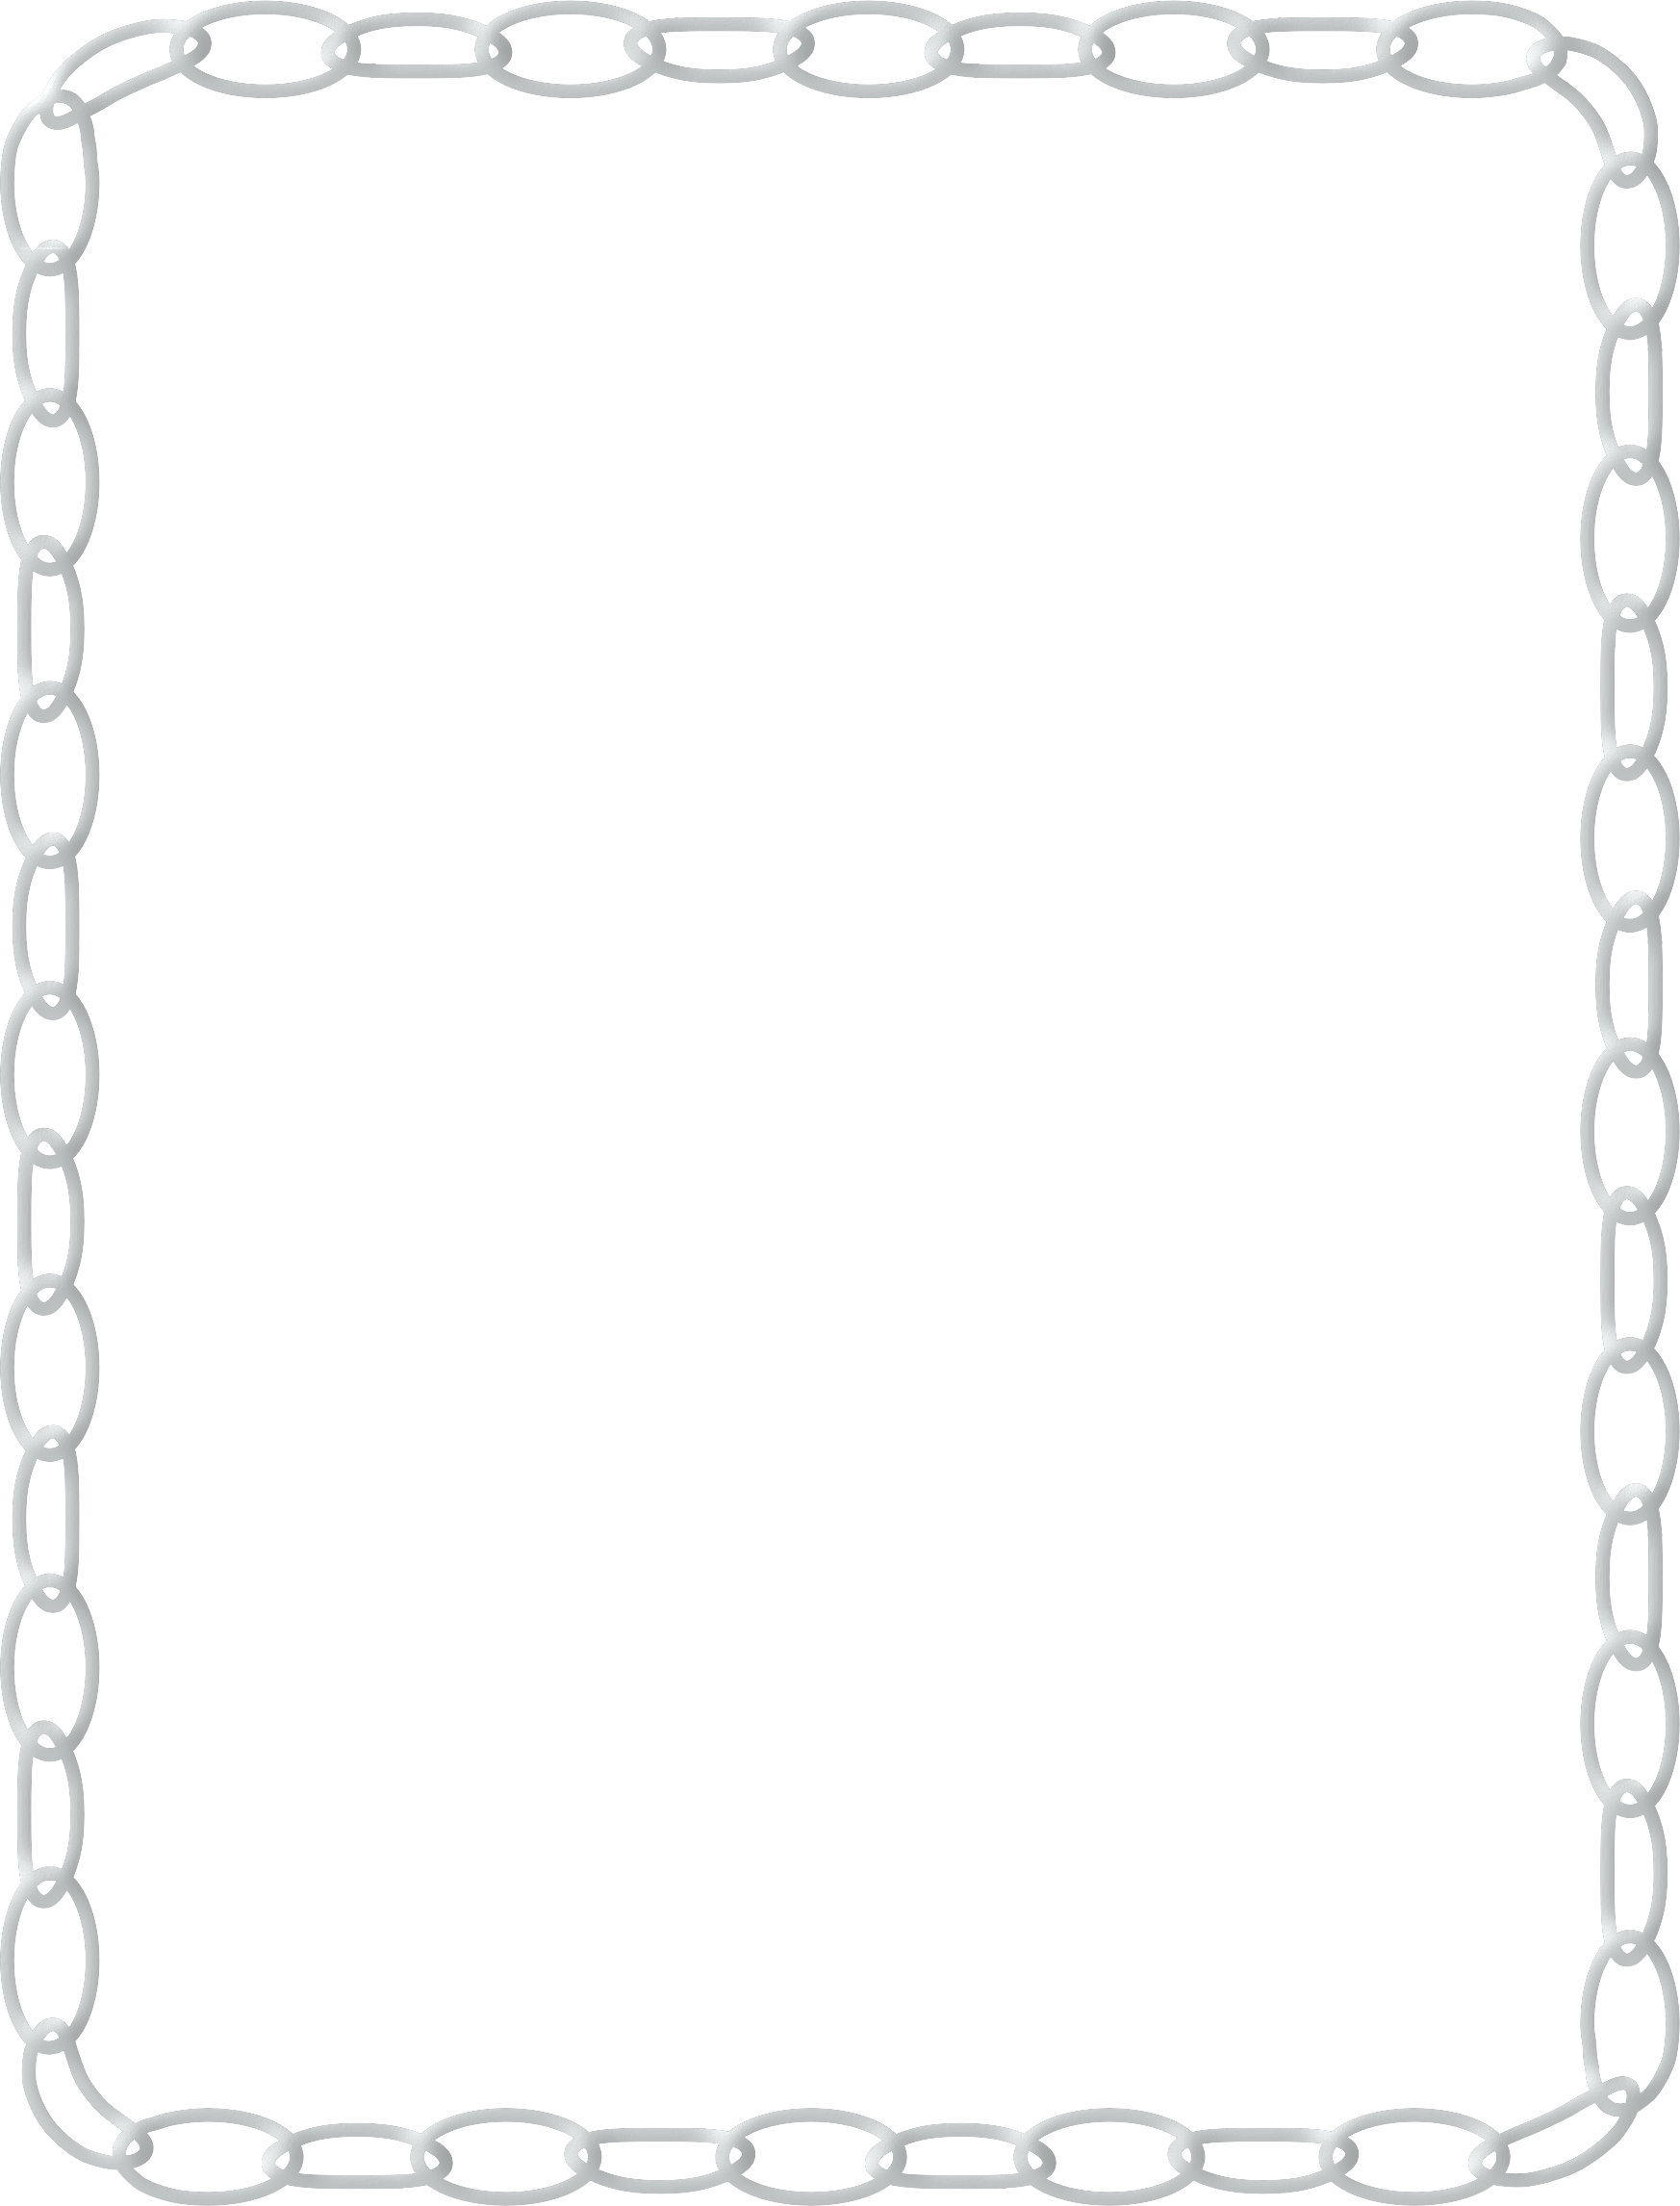 Chain Border Clipart - Chain Border (1746x2292)